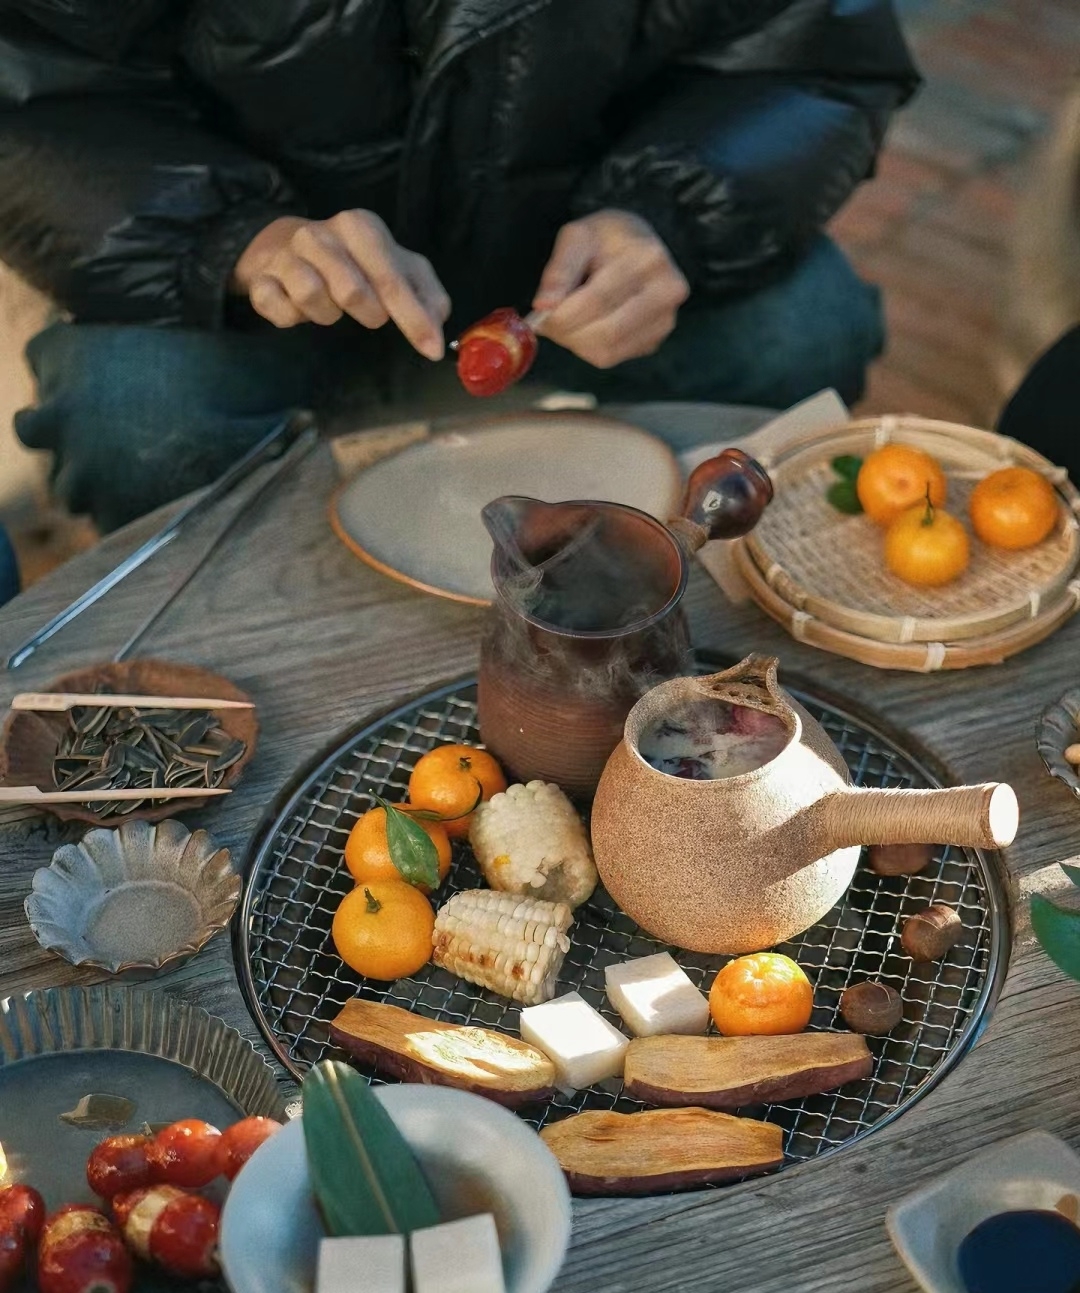 属于北京的冬日情长|围炉煮茶慢生活